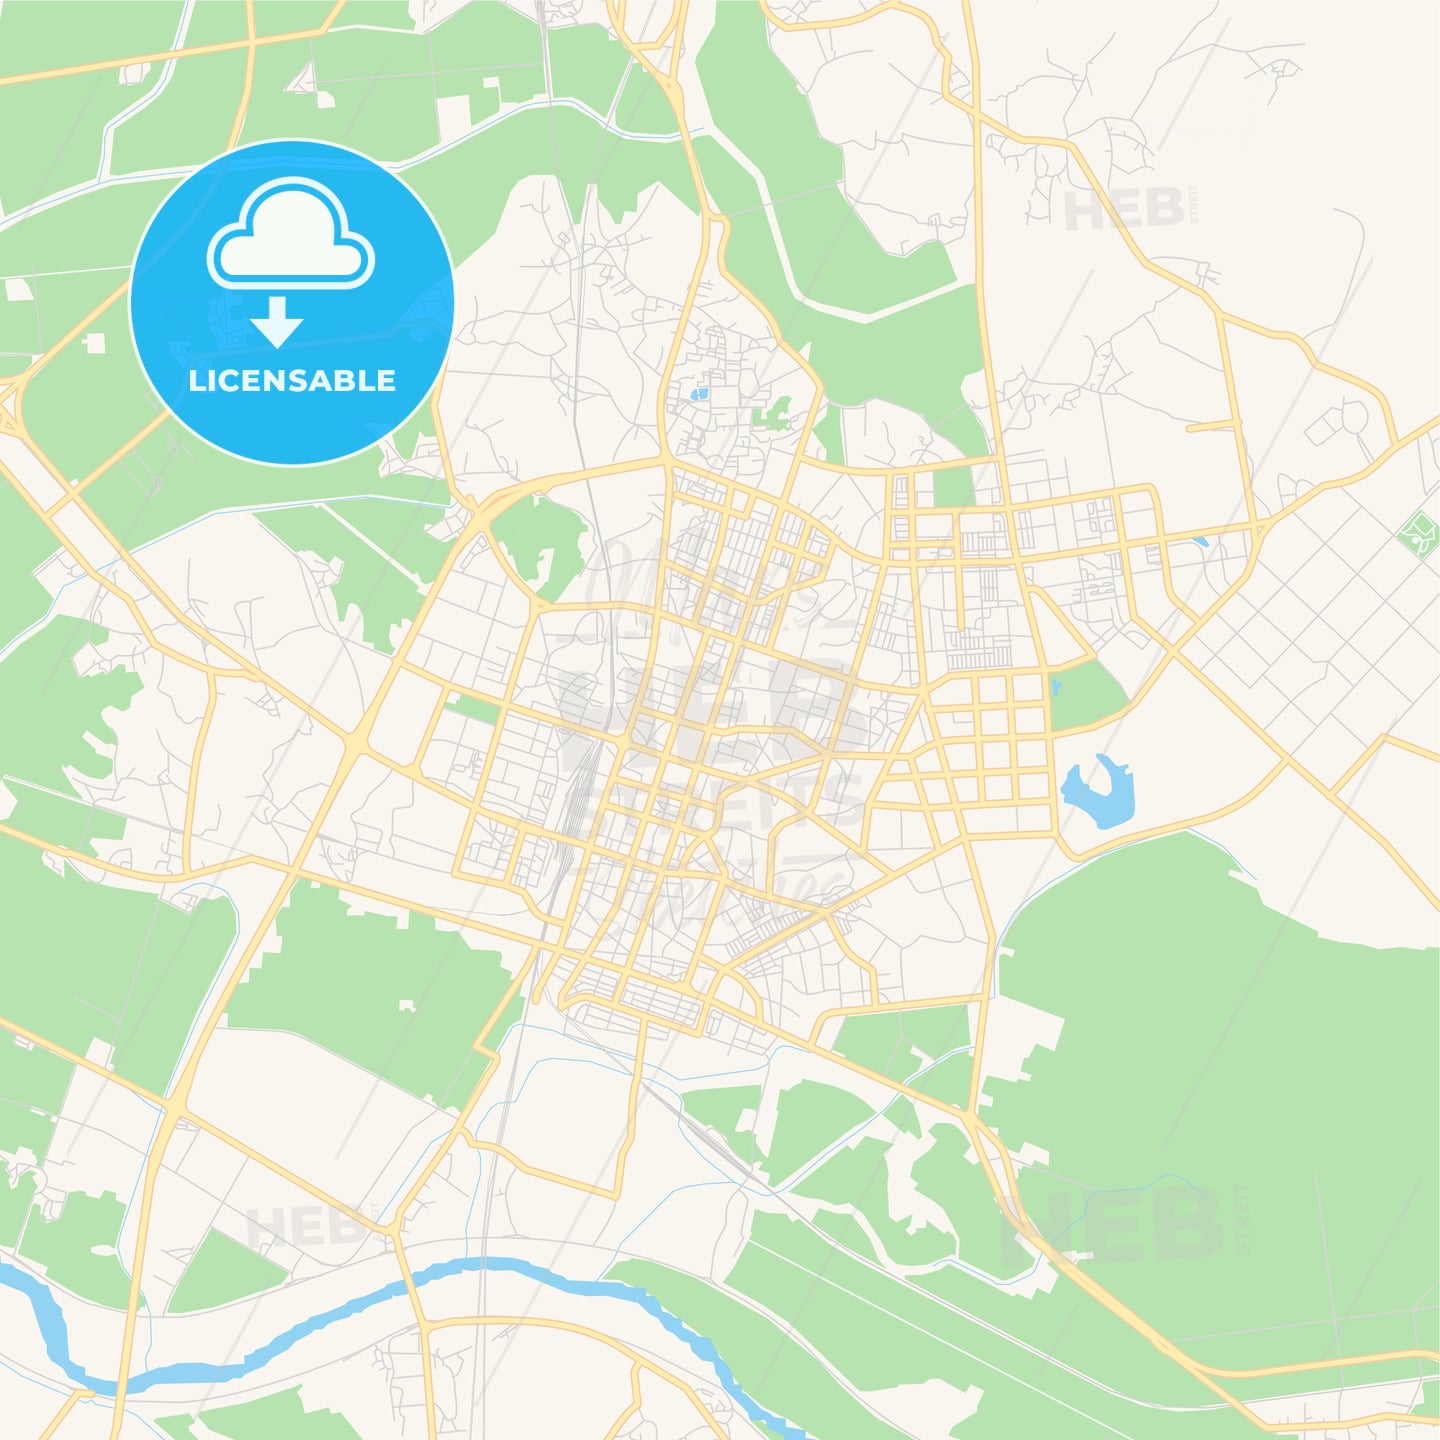 Printable street map of Iksan, South Korea